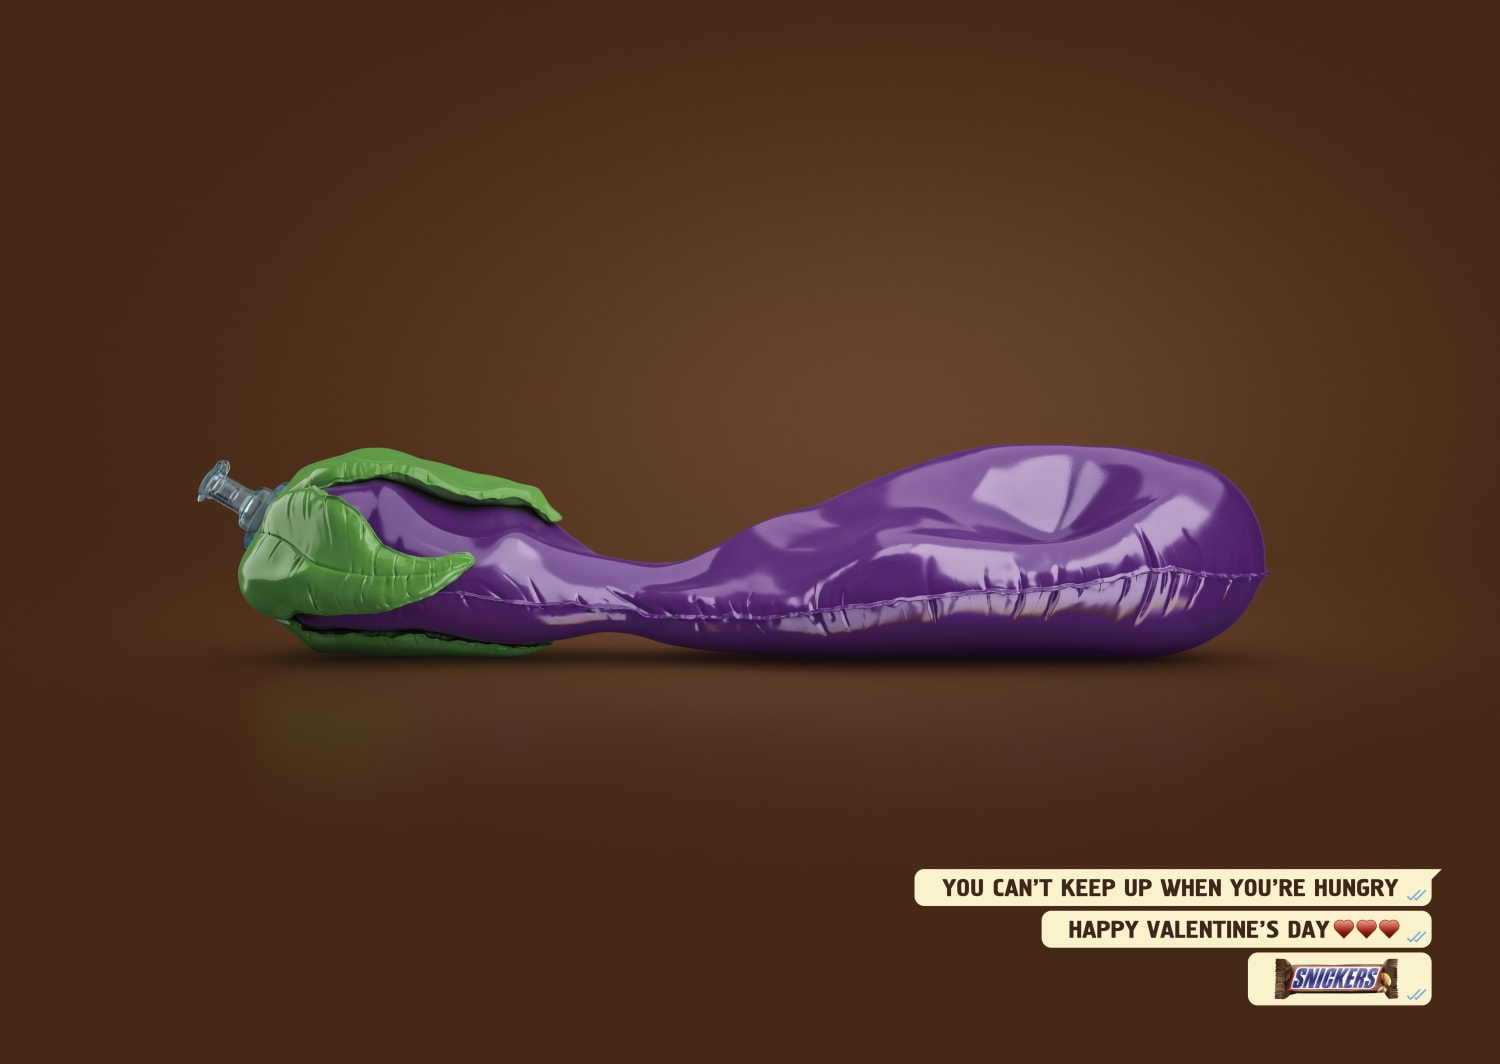 Snickers: Eggplant